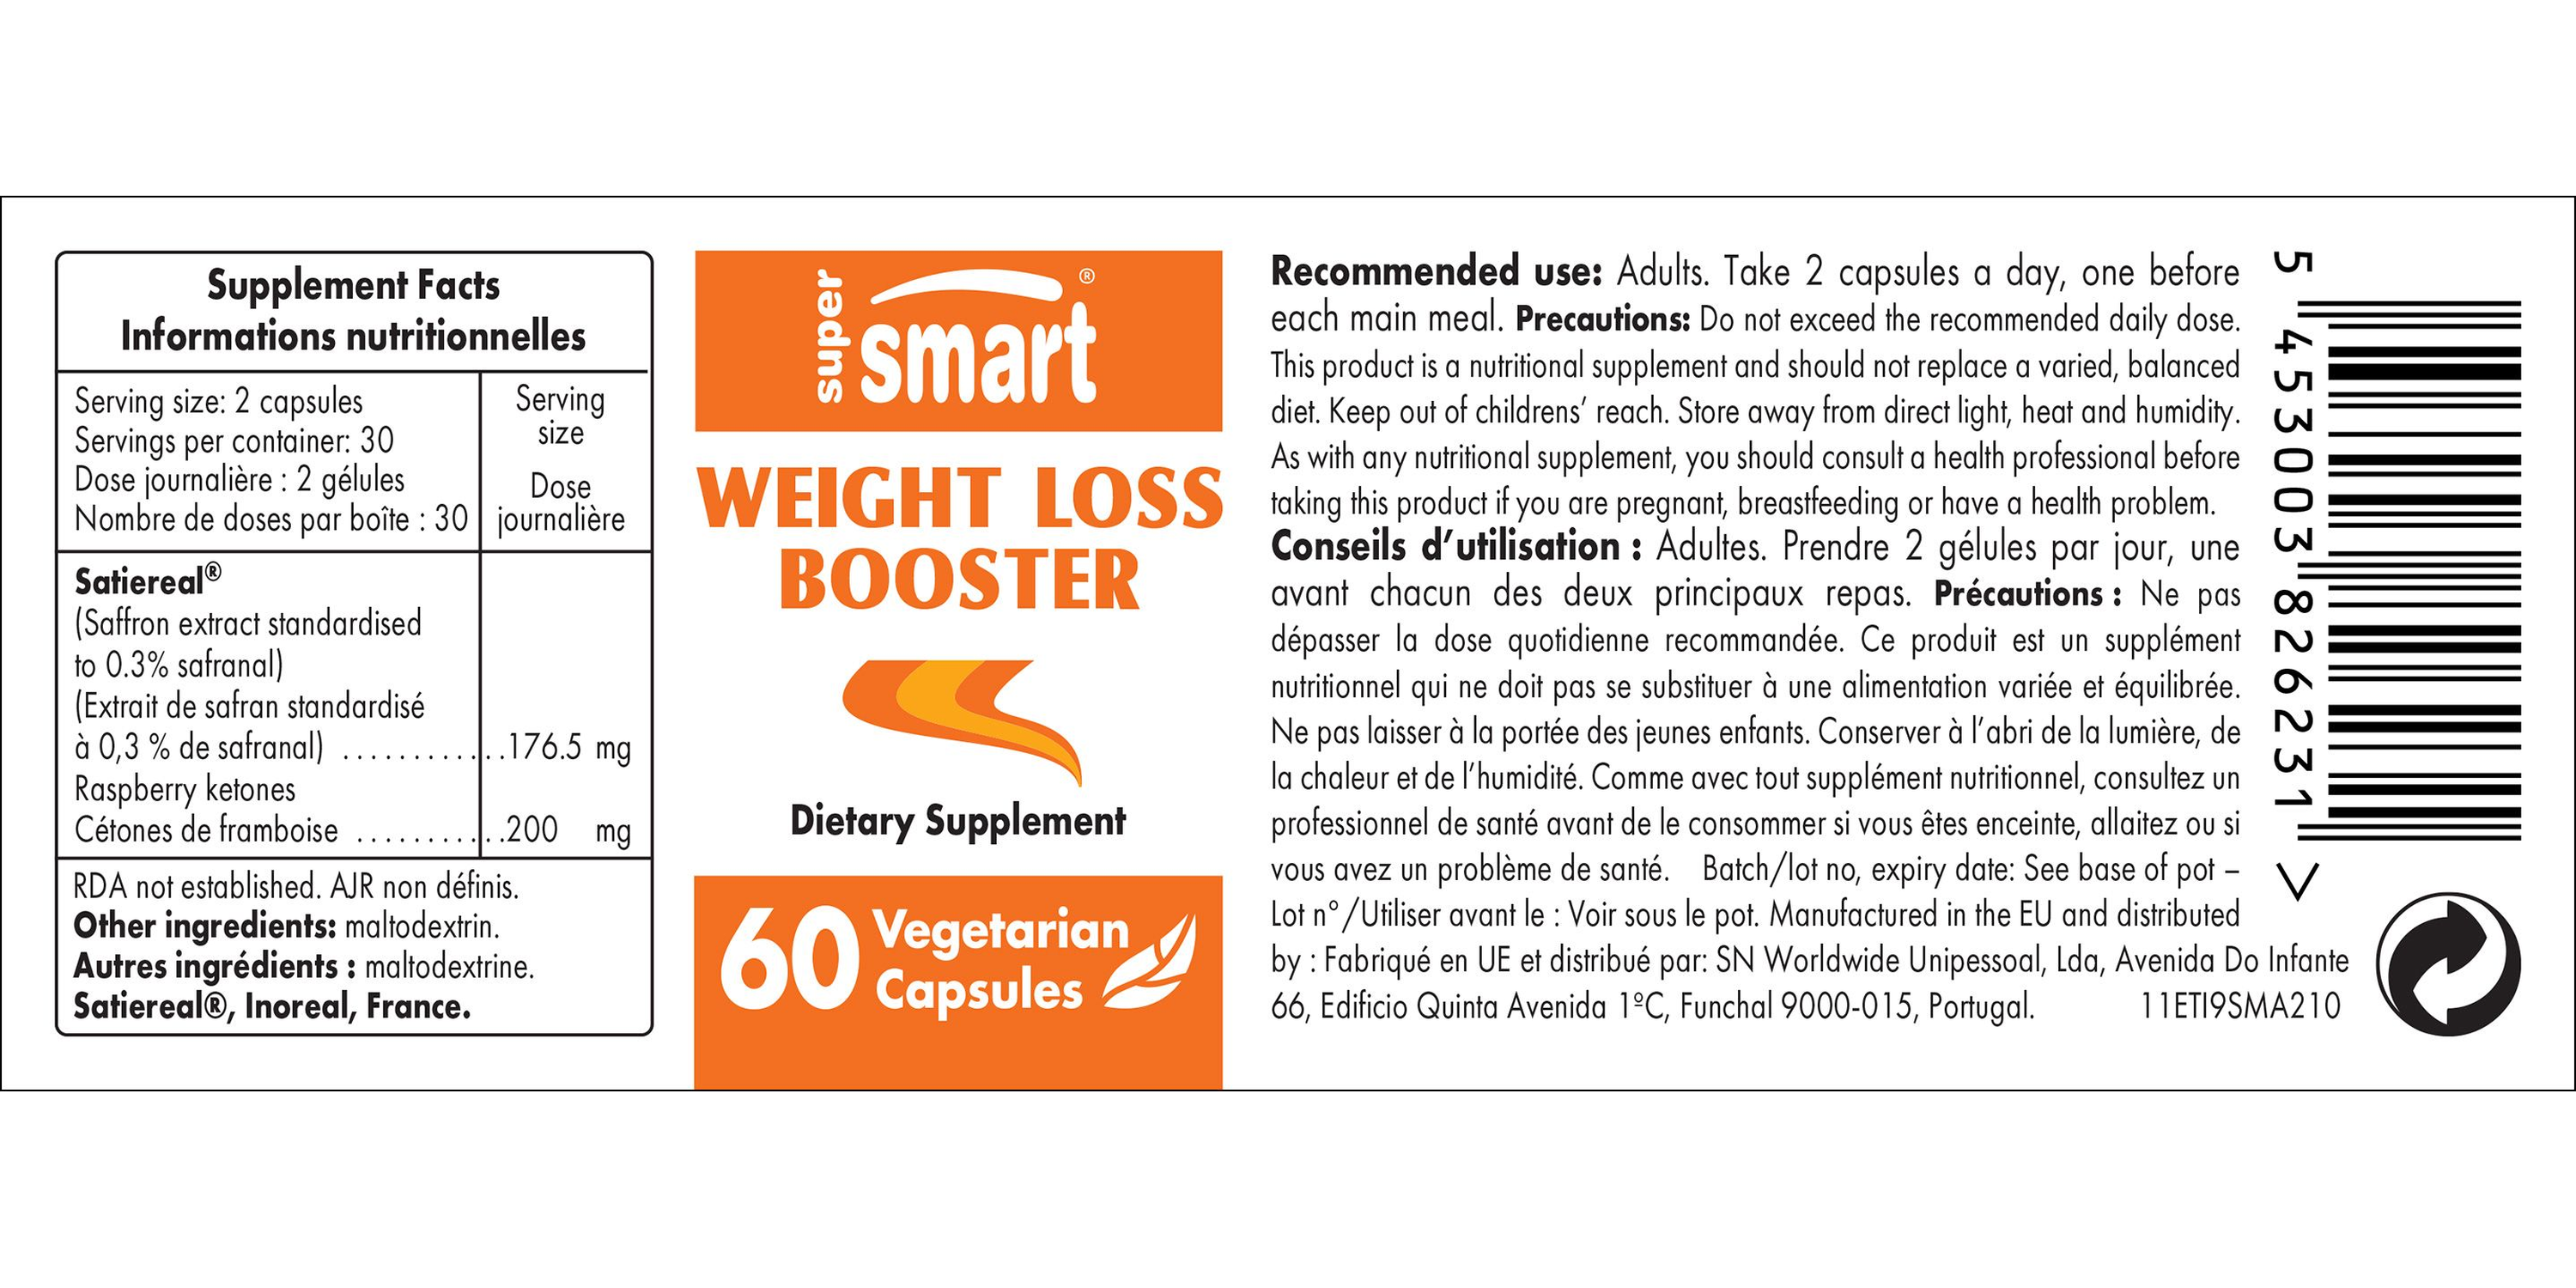 Weight Loss Booster Supplement